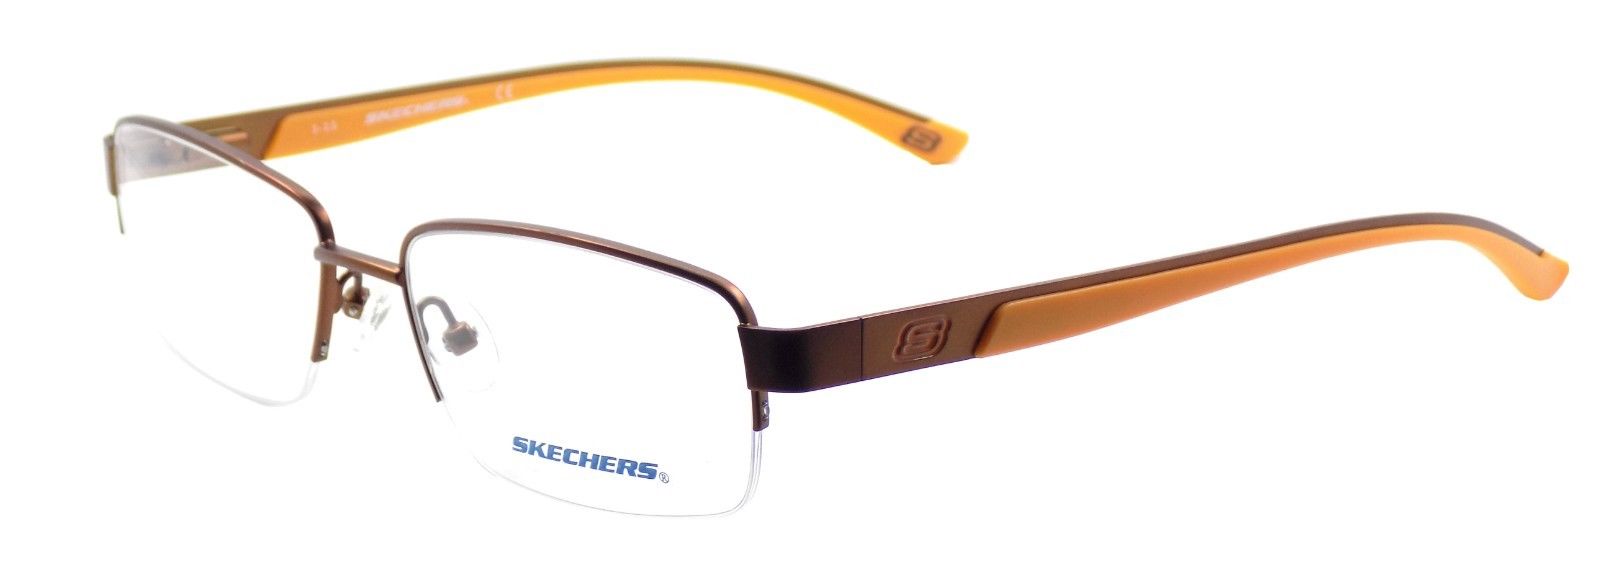 1-SKECHERS SE3170 049 Men's Eyeglasses Frames 53-17-140 Matte Brown / Orange +CASE-664689740765-IKSpecs